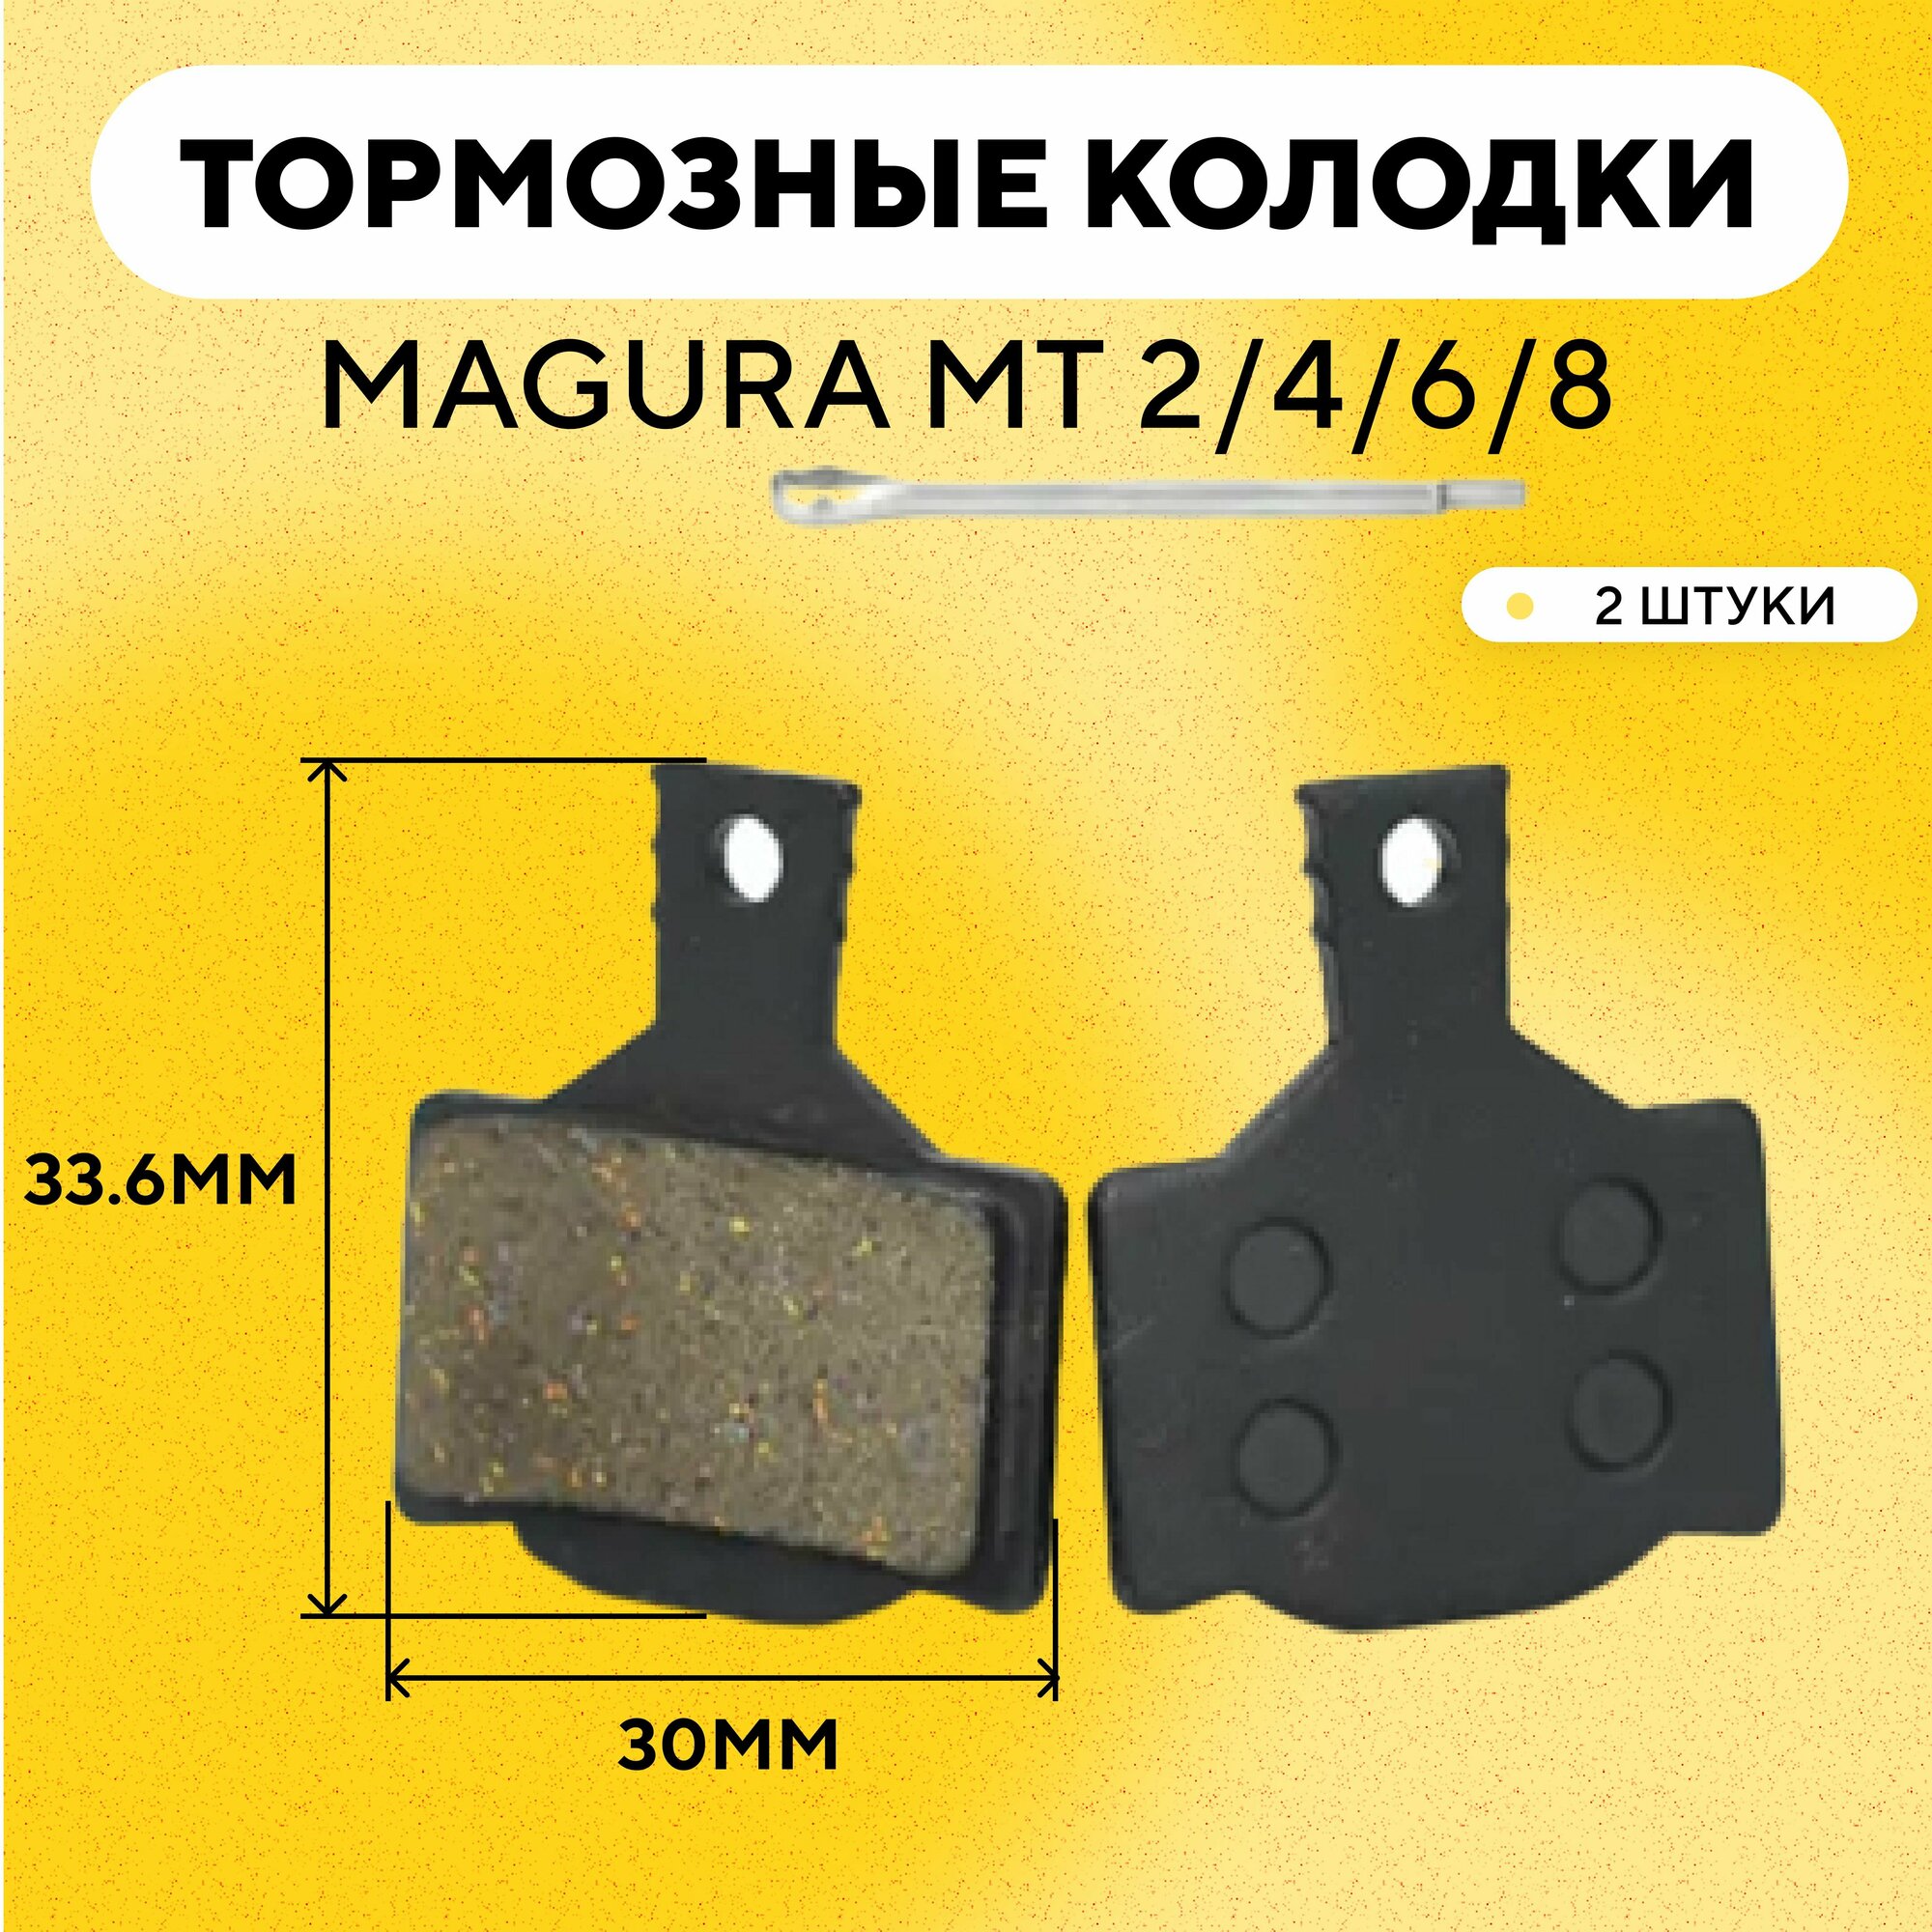 Тормозные колодки для тормозов Magura MT 2/4/6/8 электросамоката, велосипеда (ширина 30 мм, высота 33.6 мм) G-009